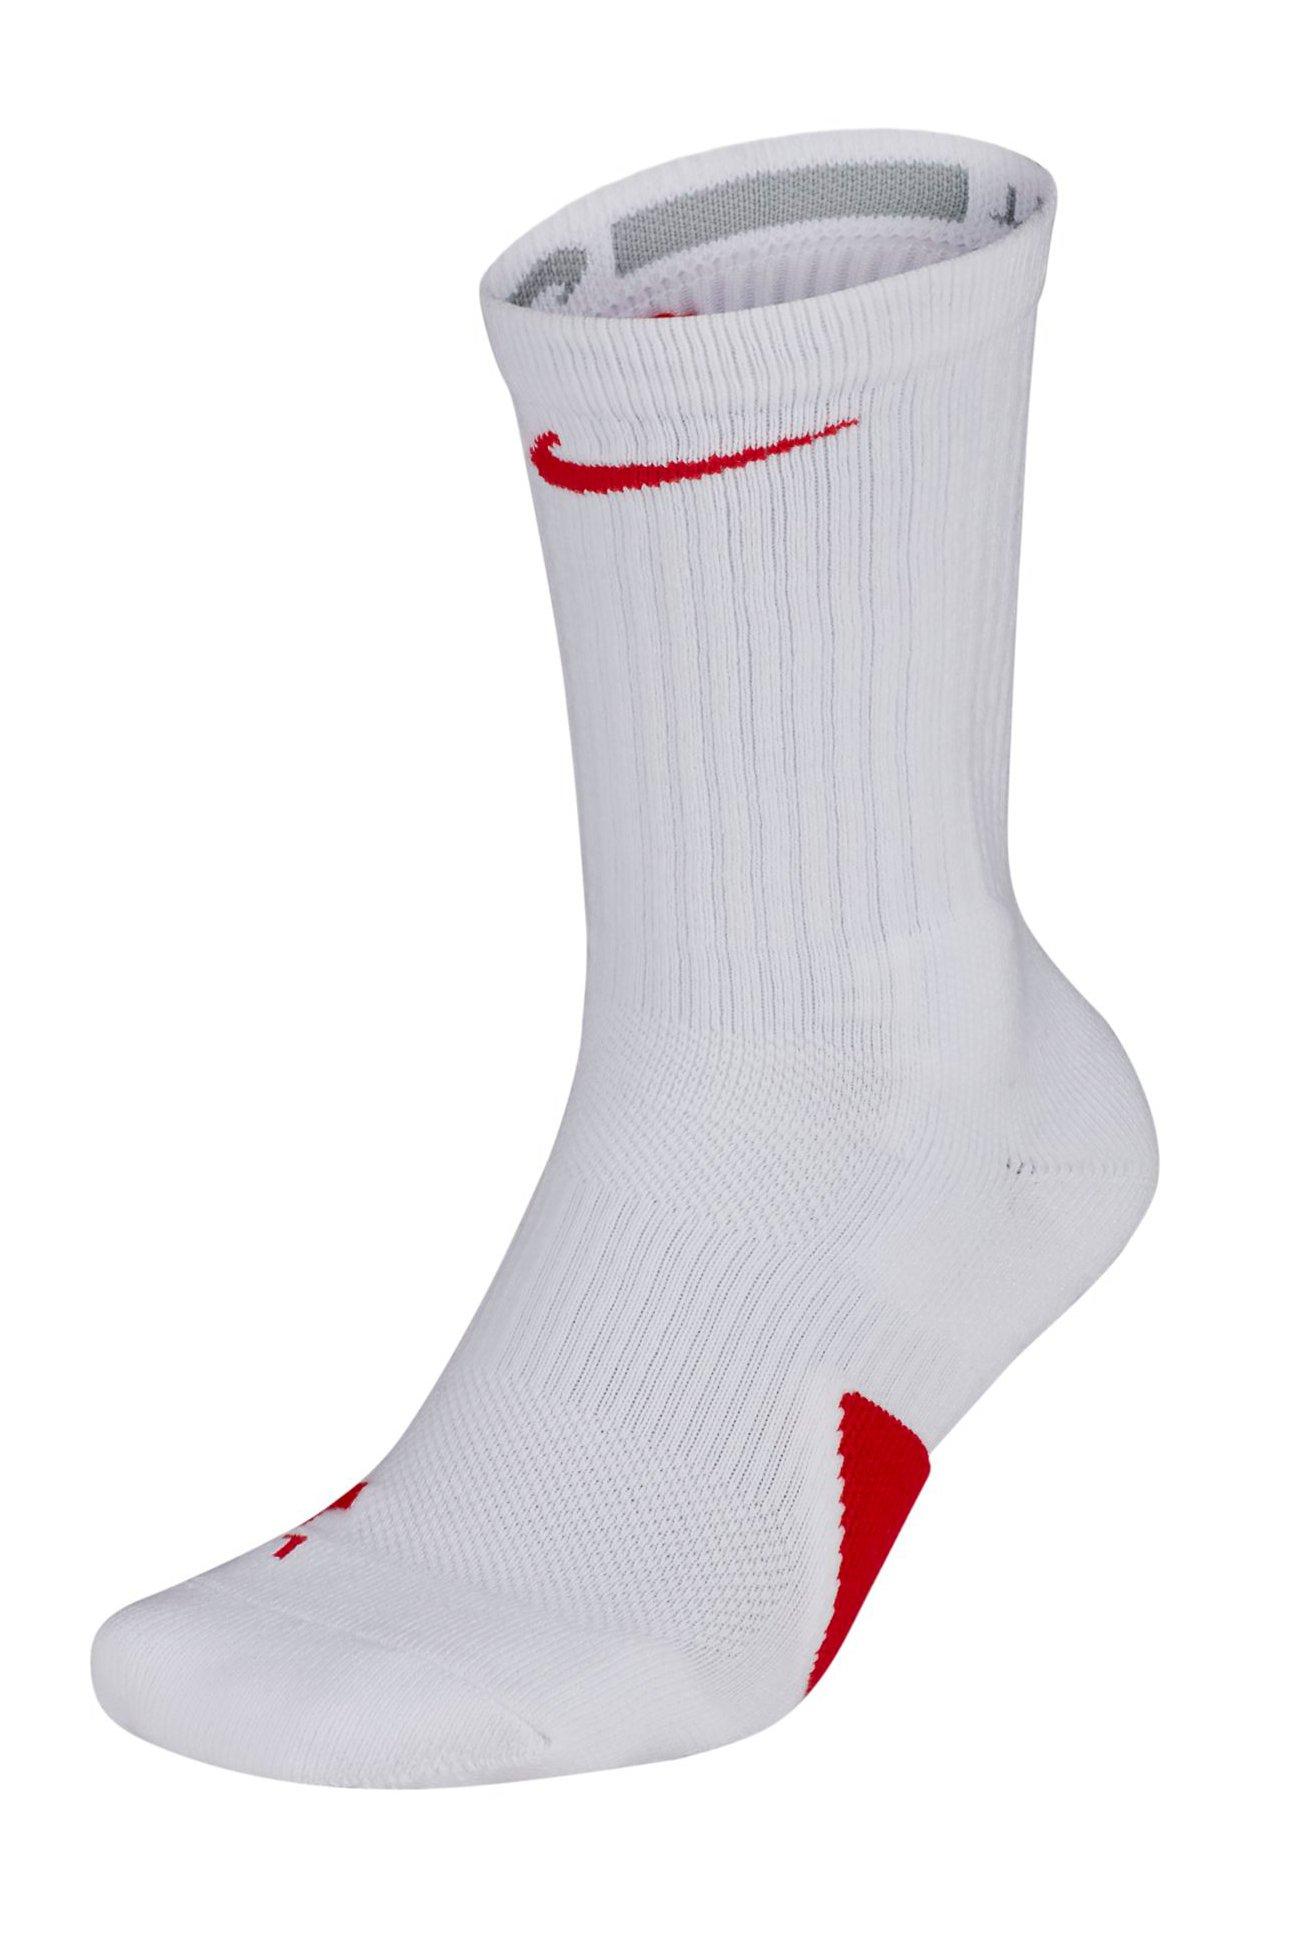 red and white elite socks